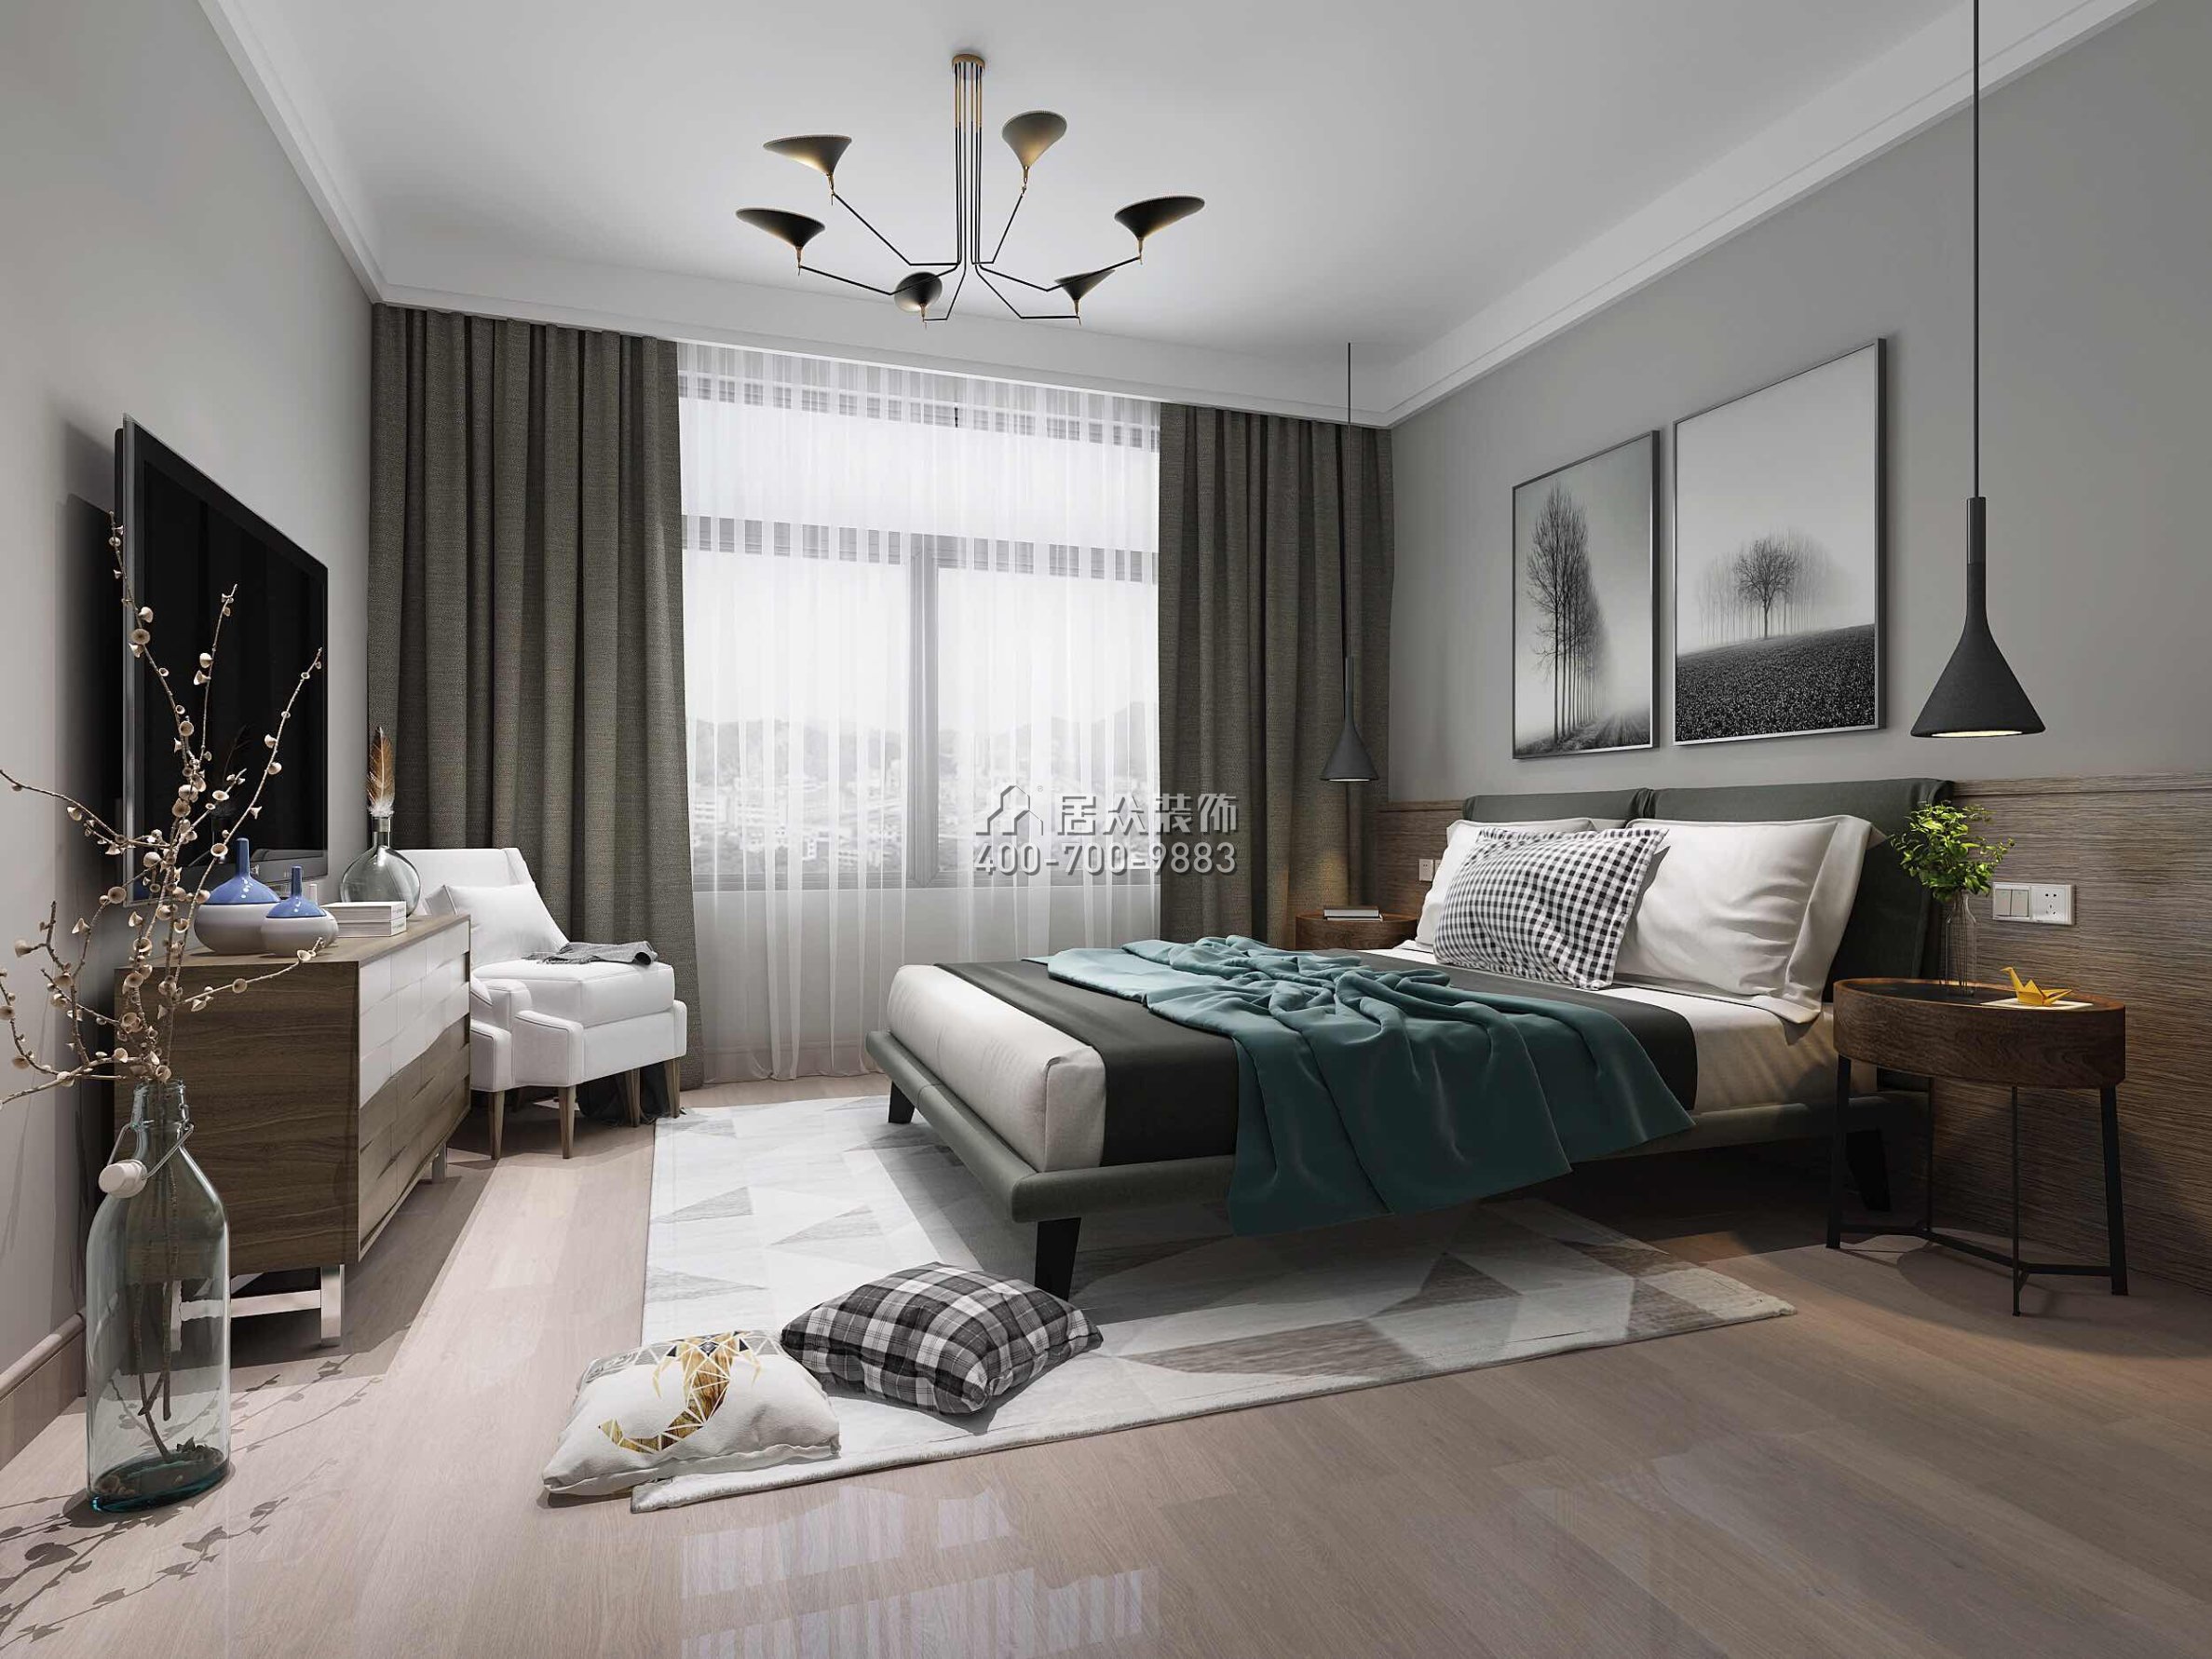 龙光水悦龙湾500平方米现代简约风格别墅户型卧室装修效果图